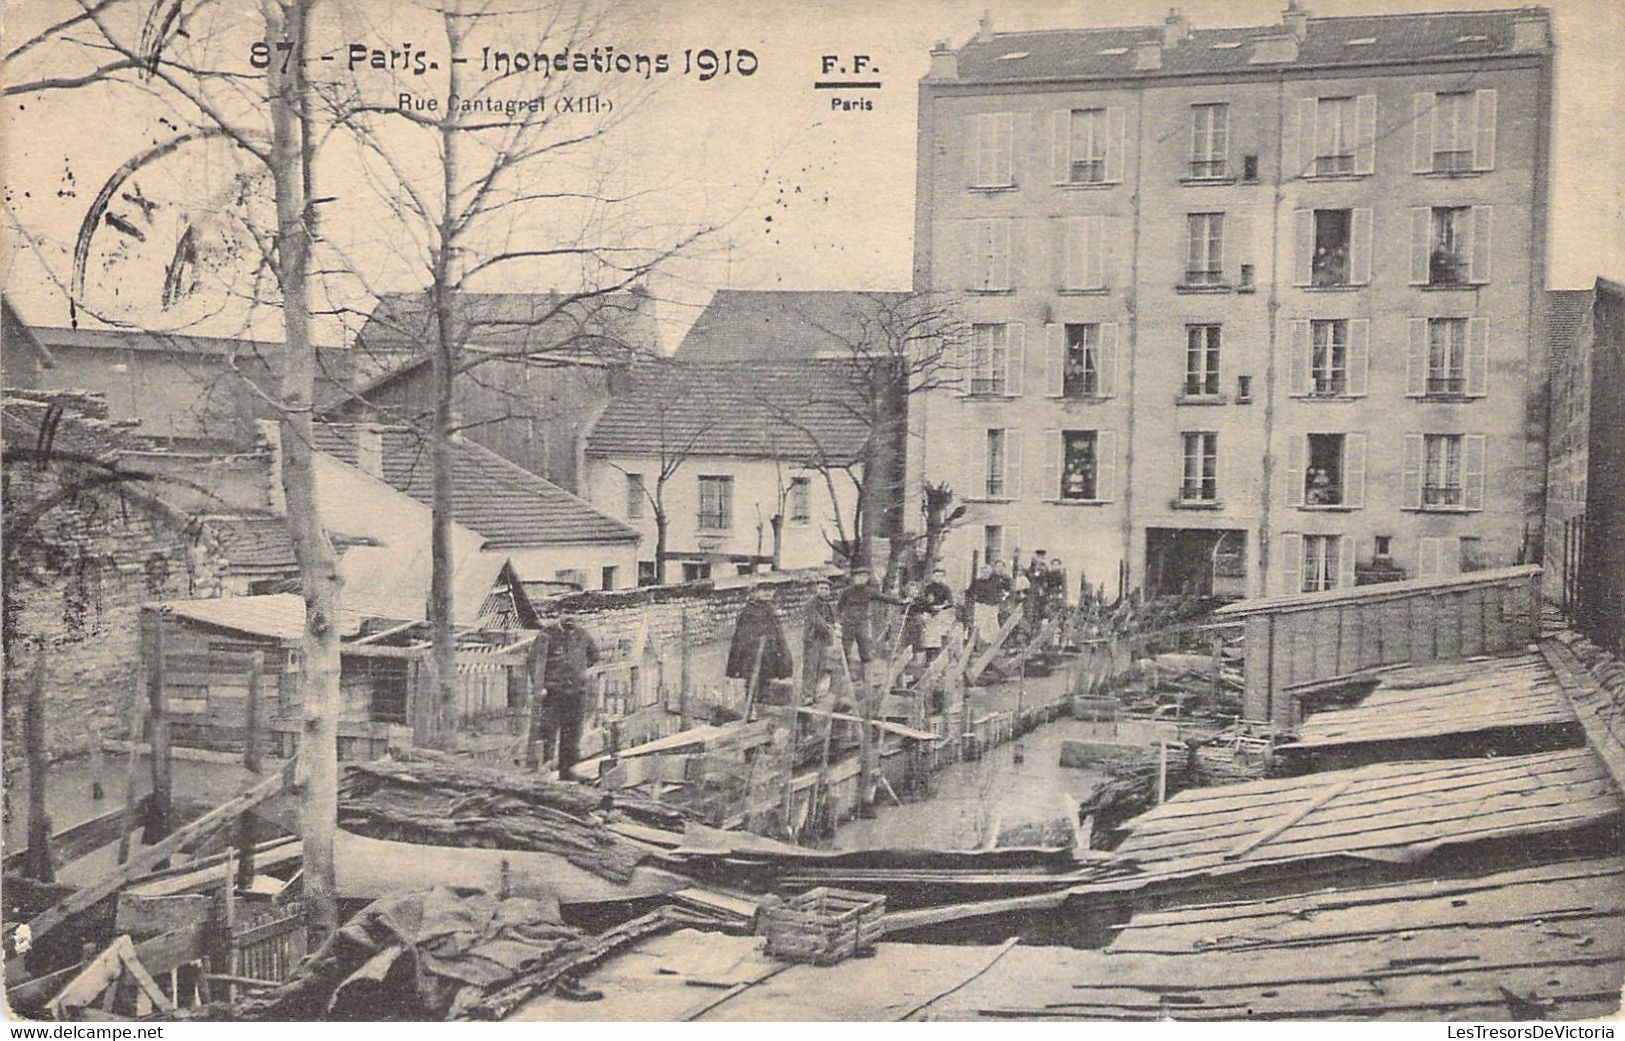 CPA France - Paris - Inondations De 1910 - Rue Cantagrel - XIIIe - F. F. Paris - Oblitérée Bruxelles 1910 - La Crecida Del Sena De 1910